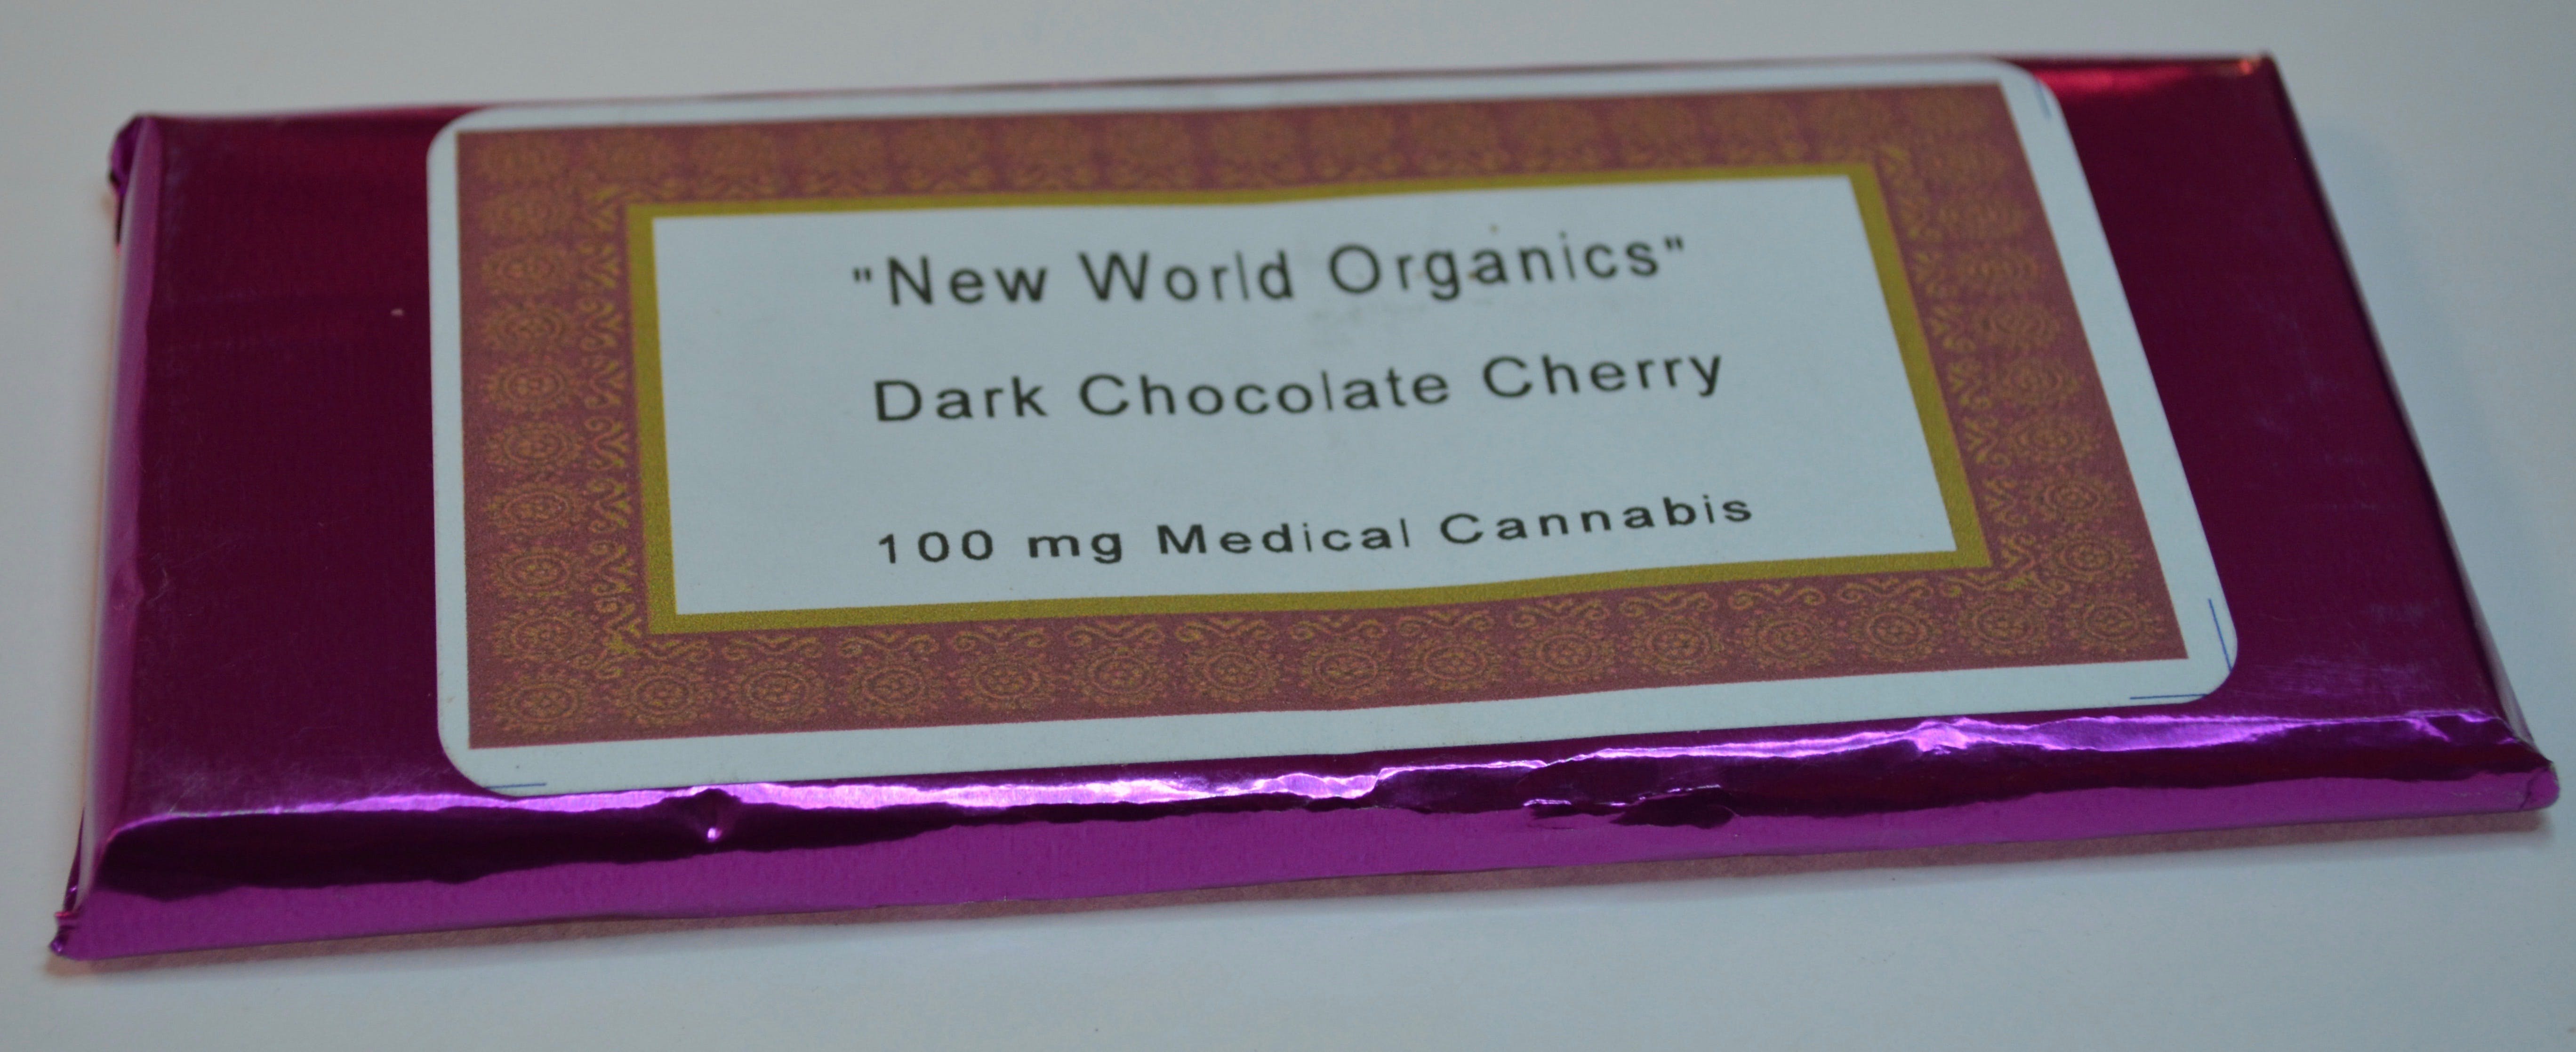 edible-nwo-dark-chocolate-cherry